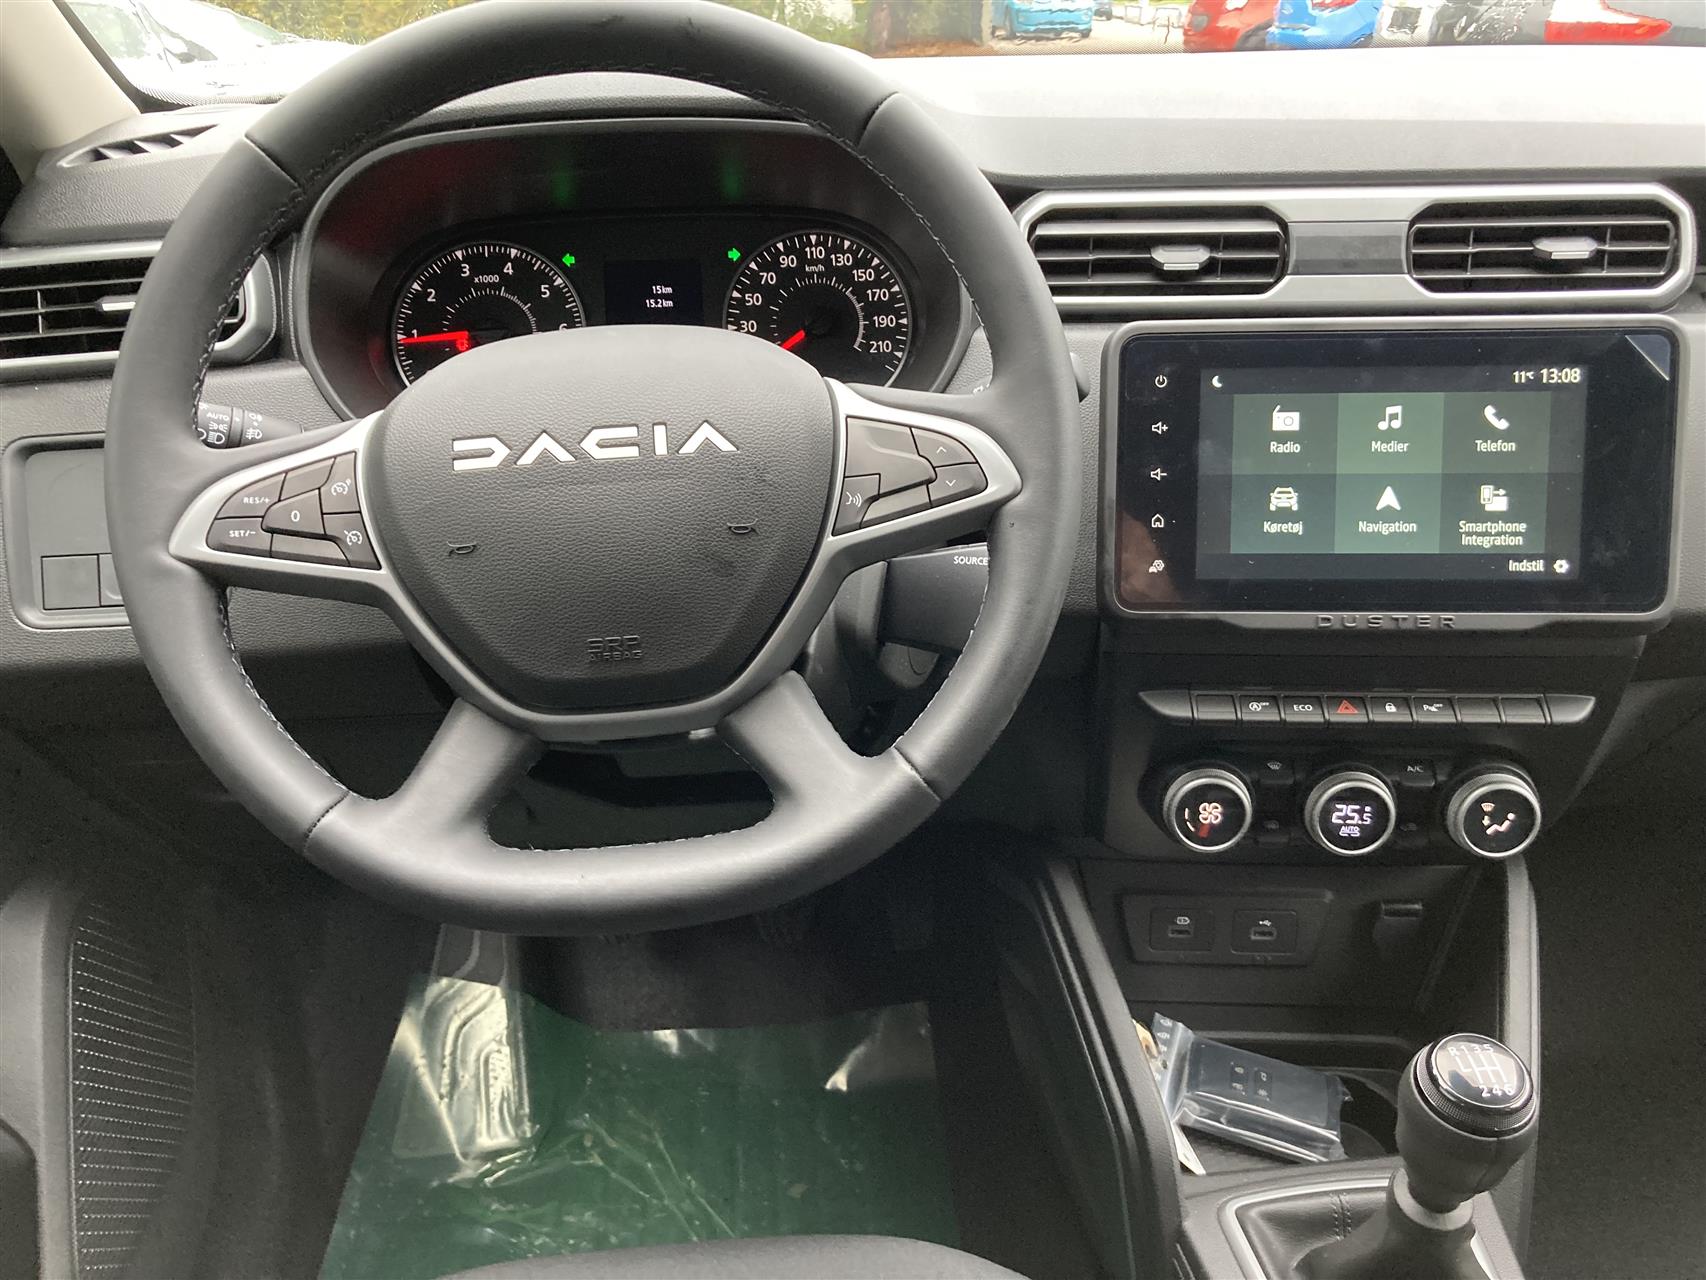 Billede af Dacia Duster 1,0 Tce Journey 90HK 5d 6g